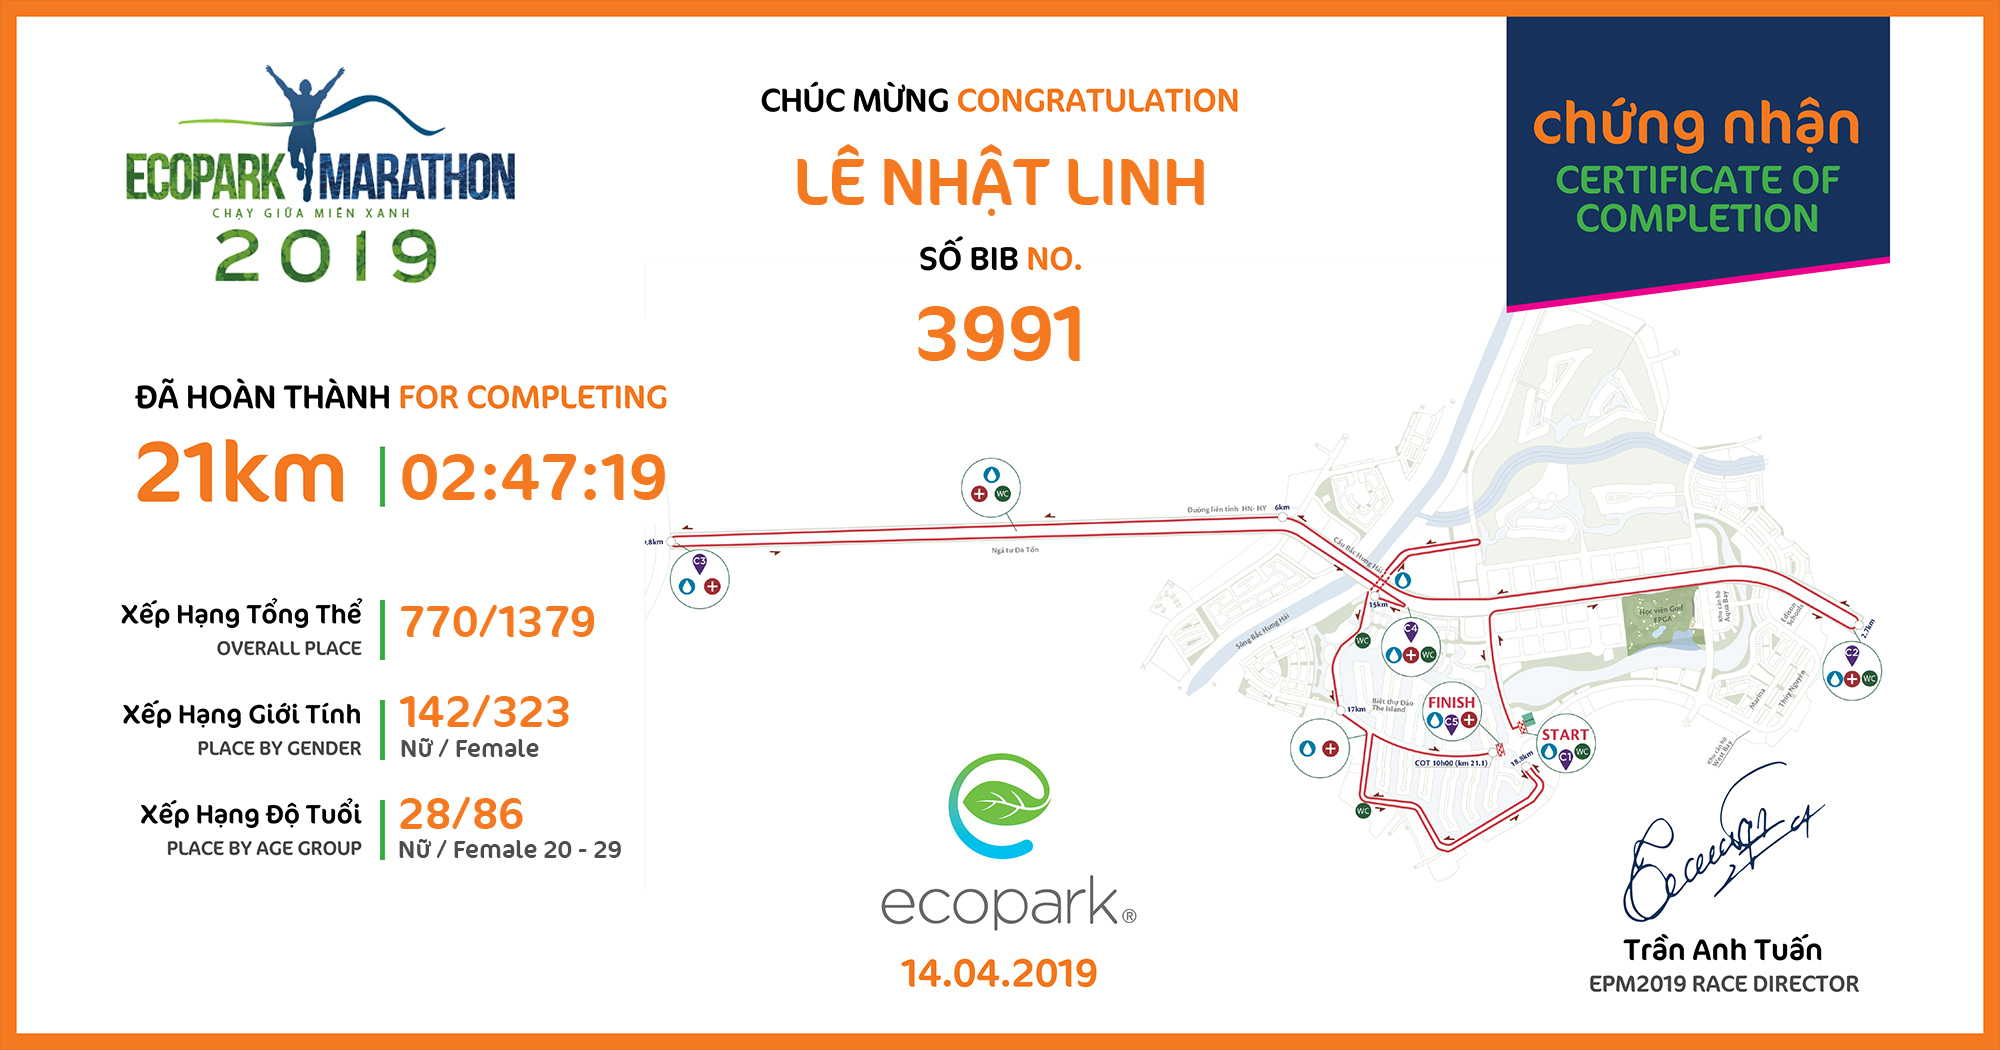 3991 - Lê Nhật Linh